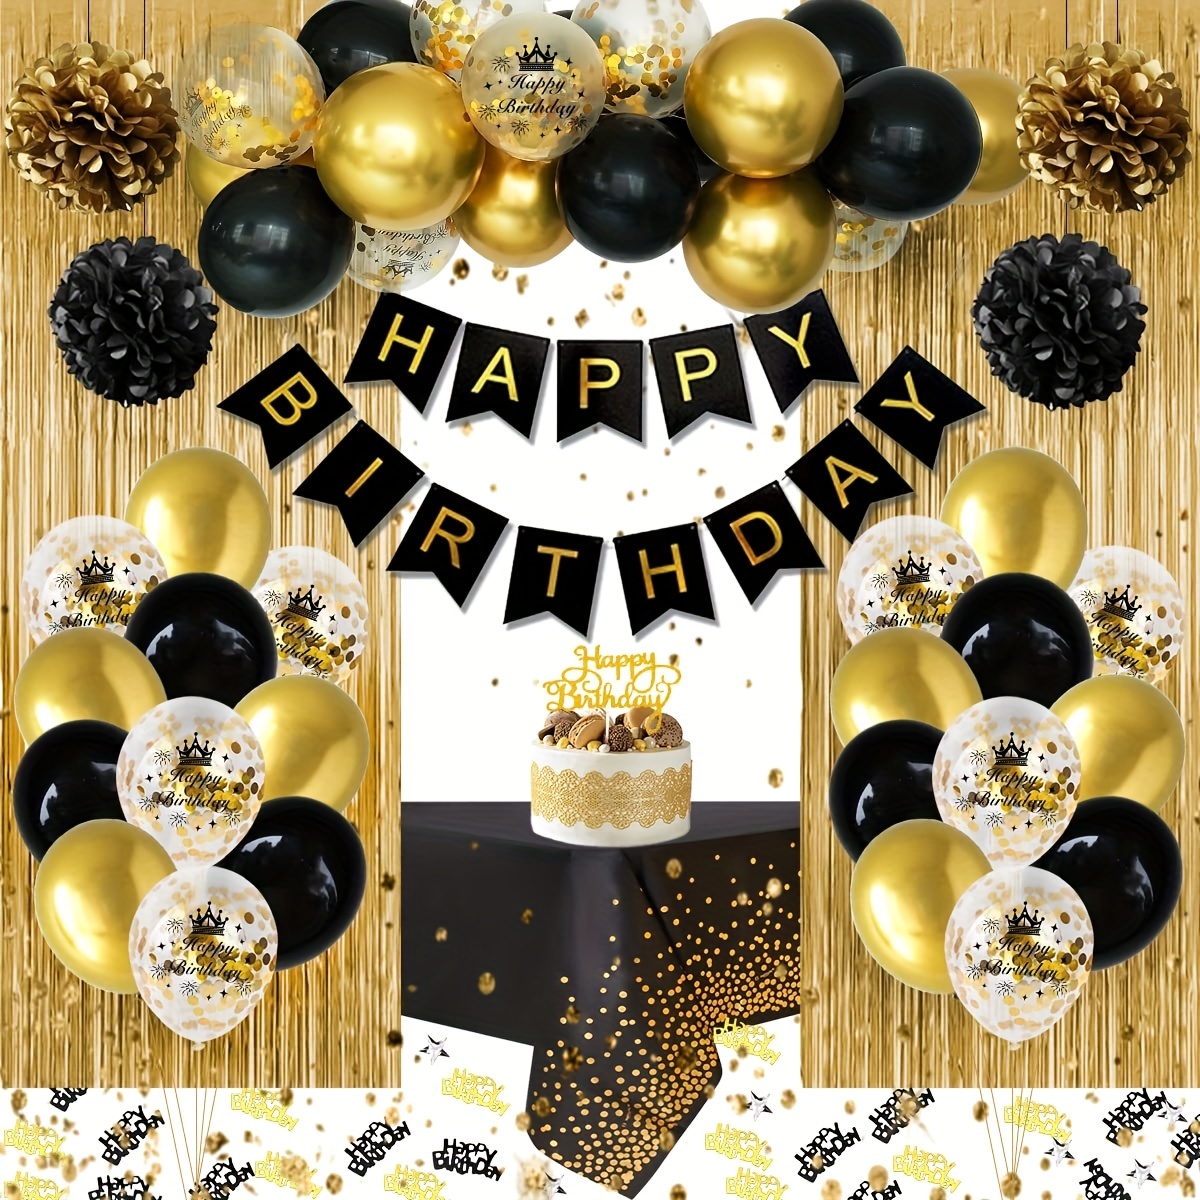 Juego de globos negros de feliz cumpleaños 40 – Saludos a los 40 años de  edad temática de fiesta temática guirnalda pancarta decoración telón de  fondo